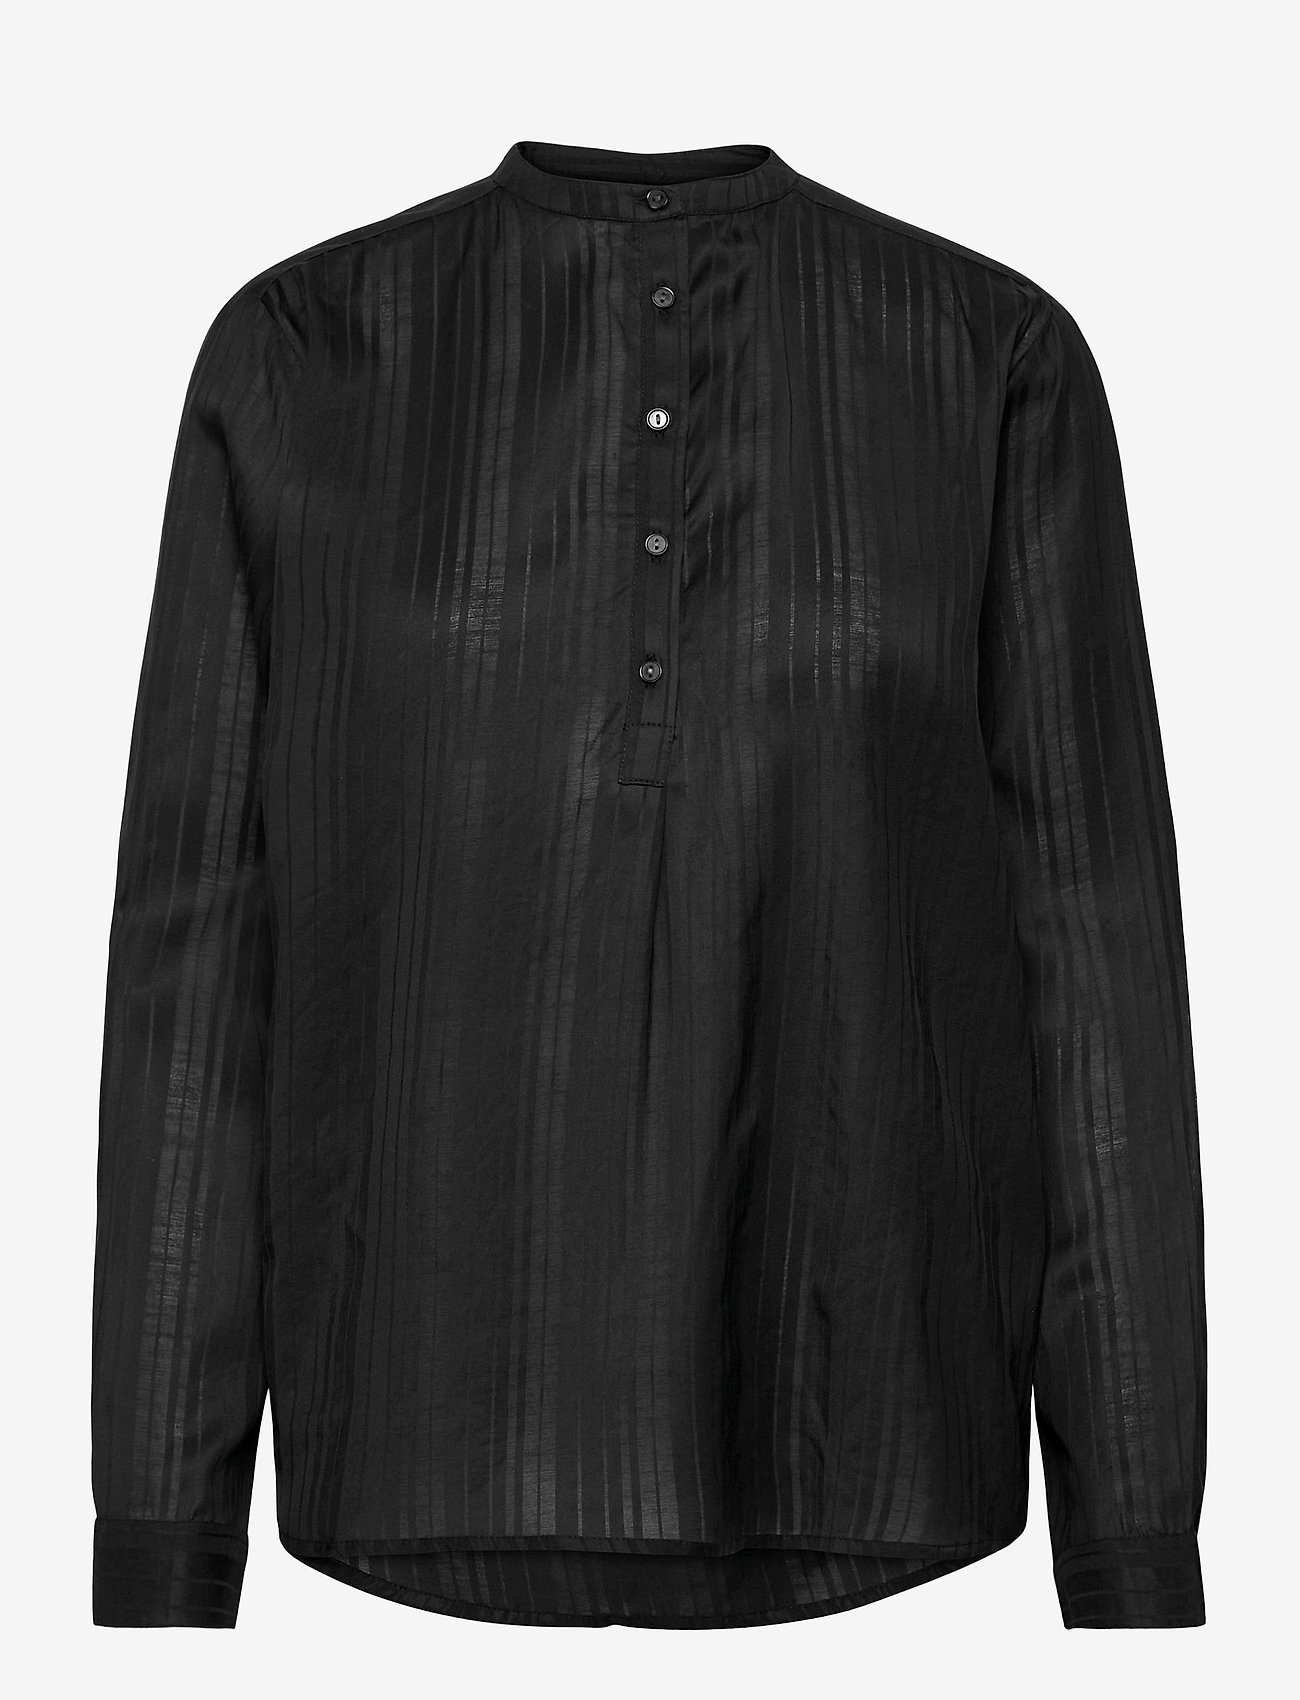 Lollys Laundry - Lux Shirt - bluzki z długimi rękawami - black - 0